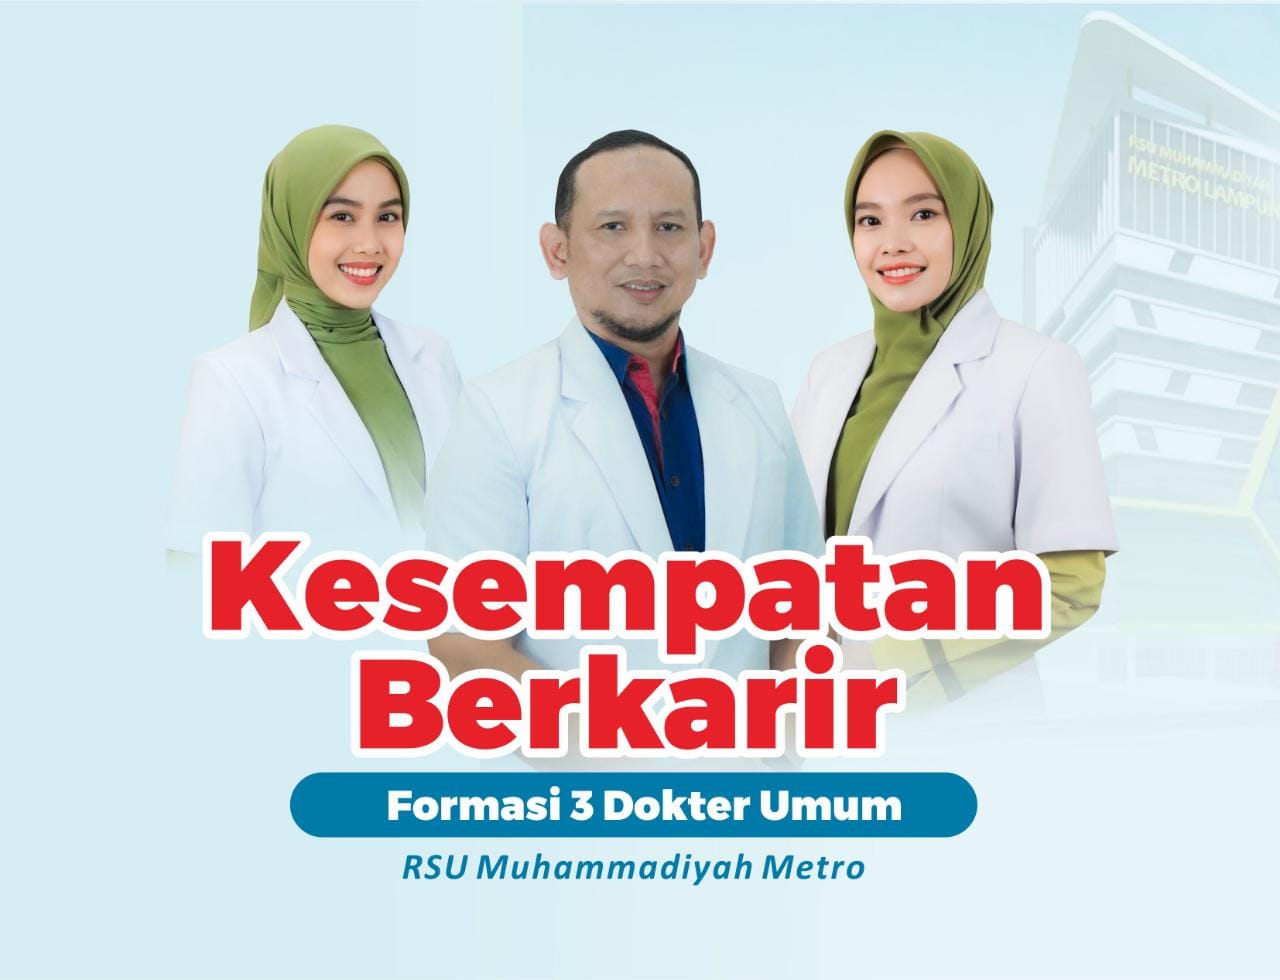 RSU Muhammadiyah Metro Rekrut 3 Dokter Umum, Berikut Ini Persyaratannya